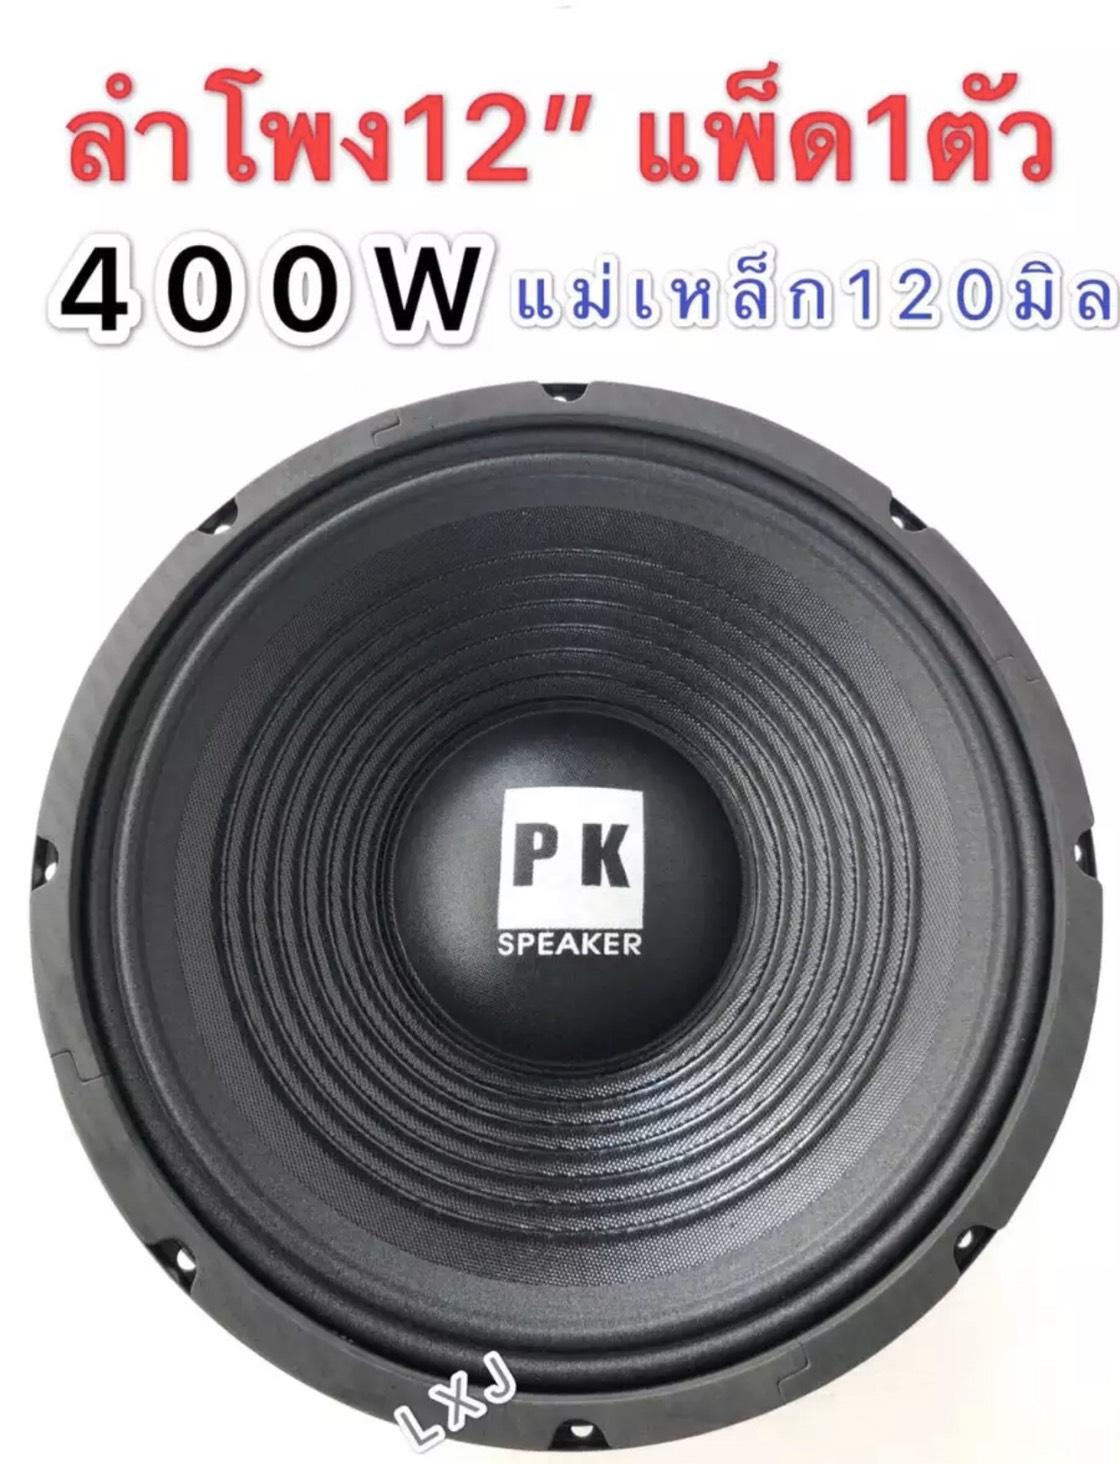 LXJ pk ดอกลำโพง 12  4-8OHM 400W รุ่น PK-12 แม่เหล็ก 120 มิล ขอบแข็ง สำหรับ ลำโพงเครื่องเสียงบ้าน ตู้ลำโพงกลางแจ้ง (สีดำ)แพ็ค 1 ดอก